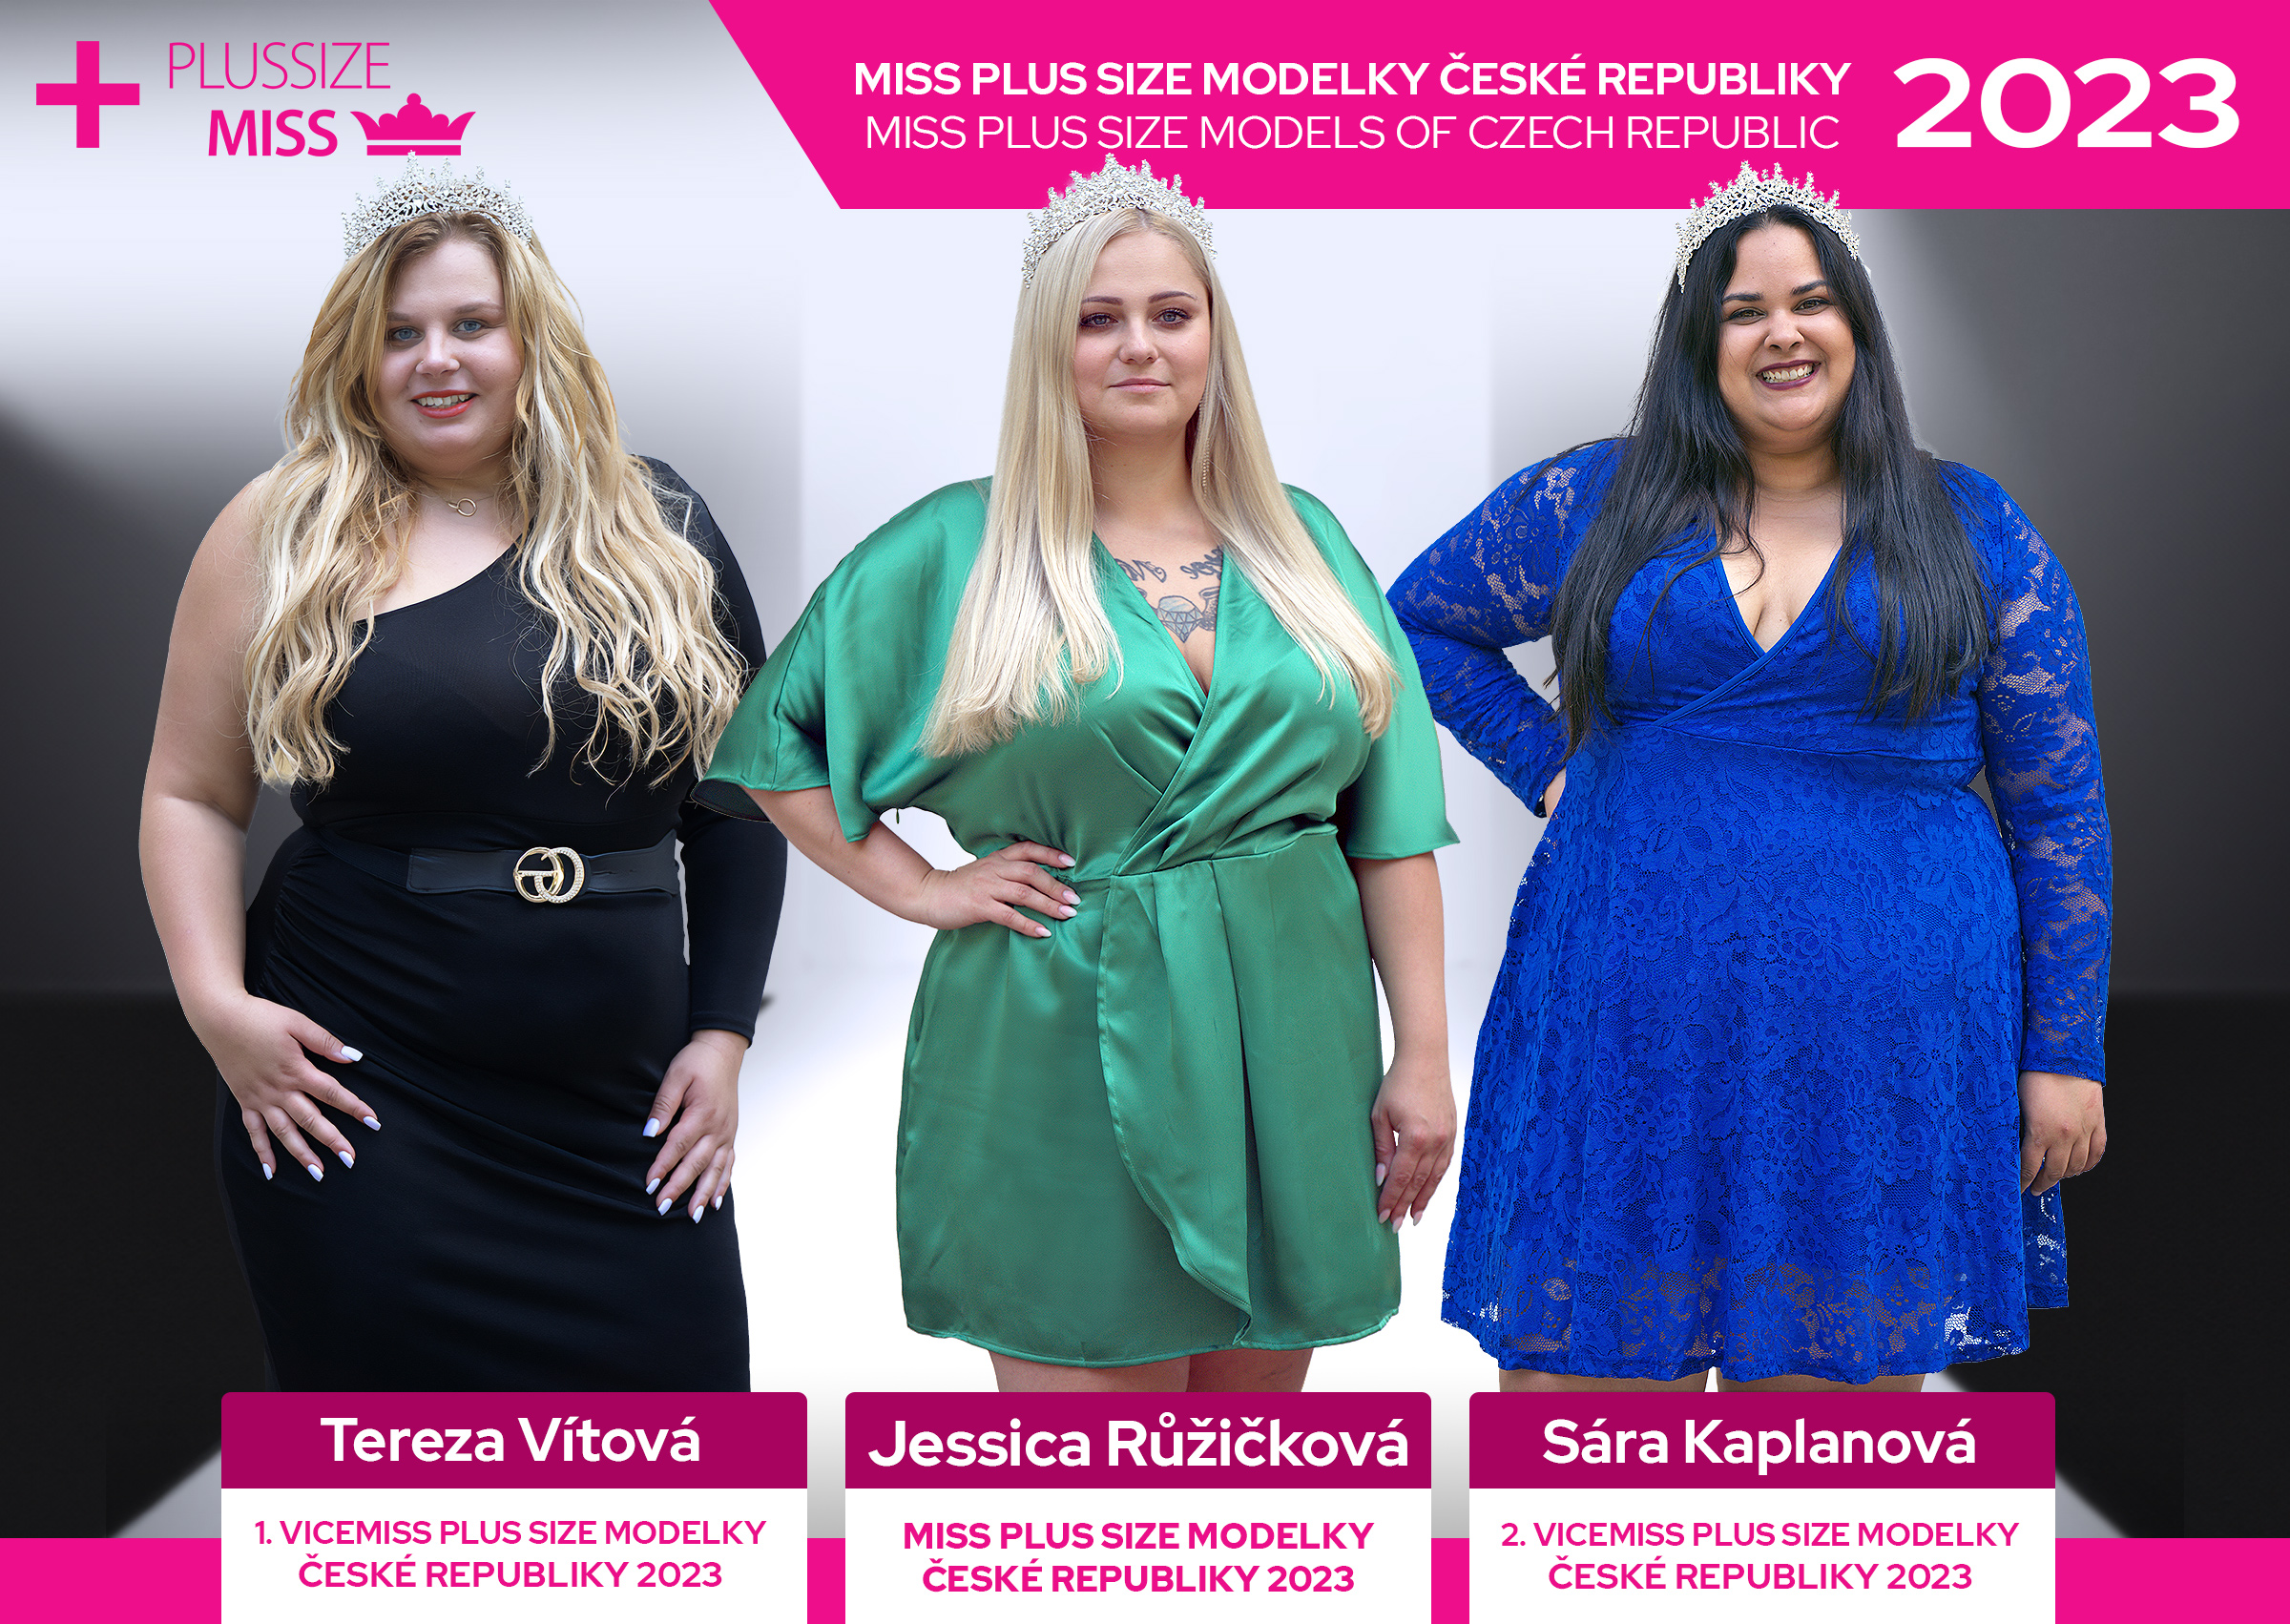 Vítězkou a titul Miss Plus Size modelky ČR 2023 získala Jessica Růžičková z města Křivoklát. Blahopřejeme!